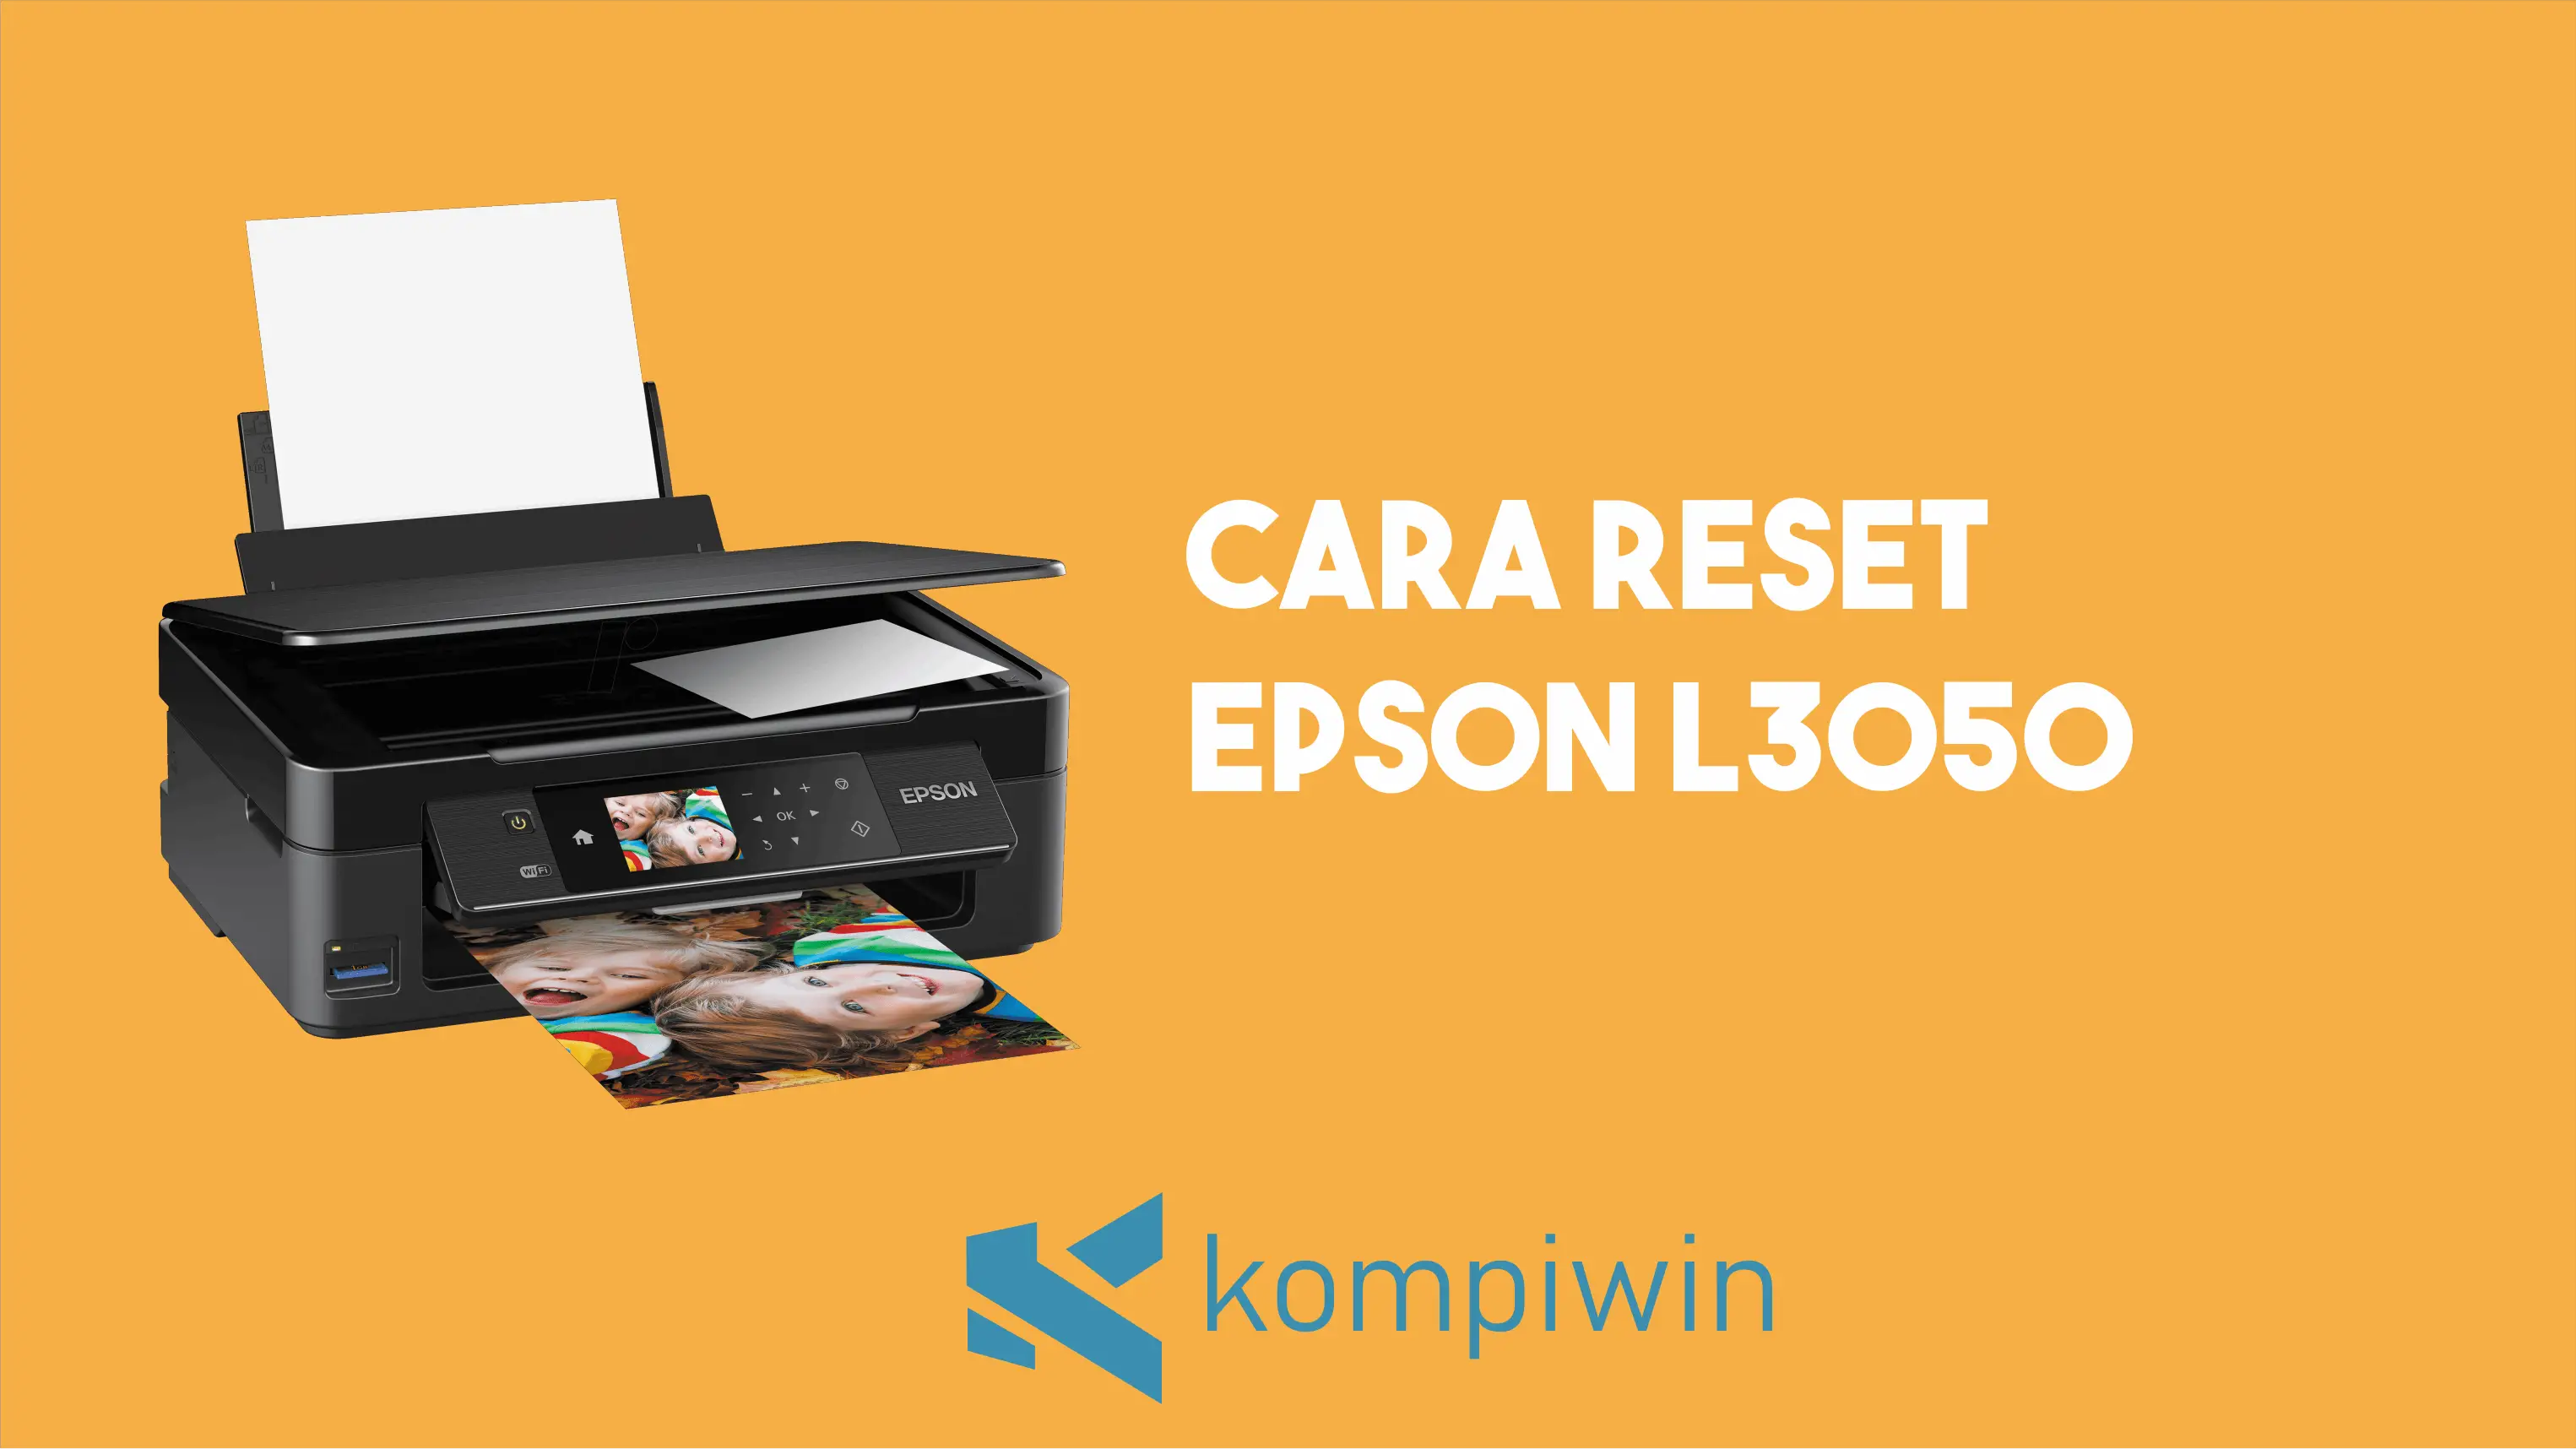 Cara Reset Epson L3050